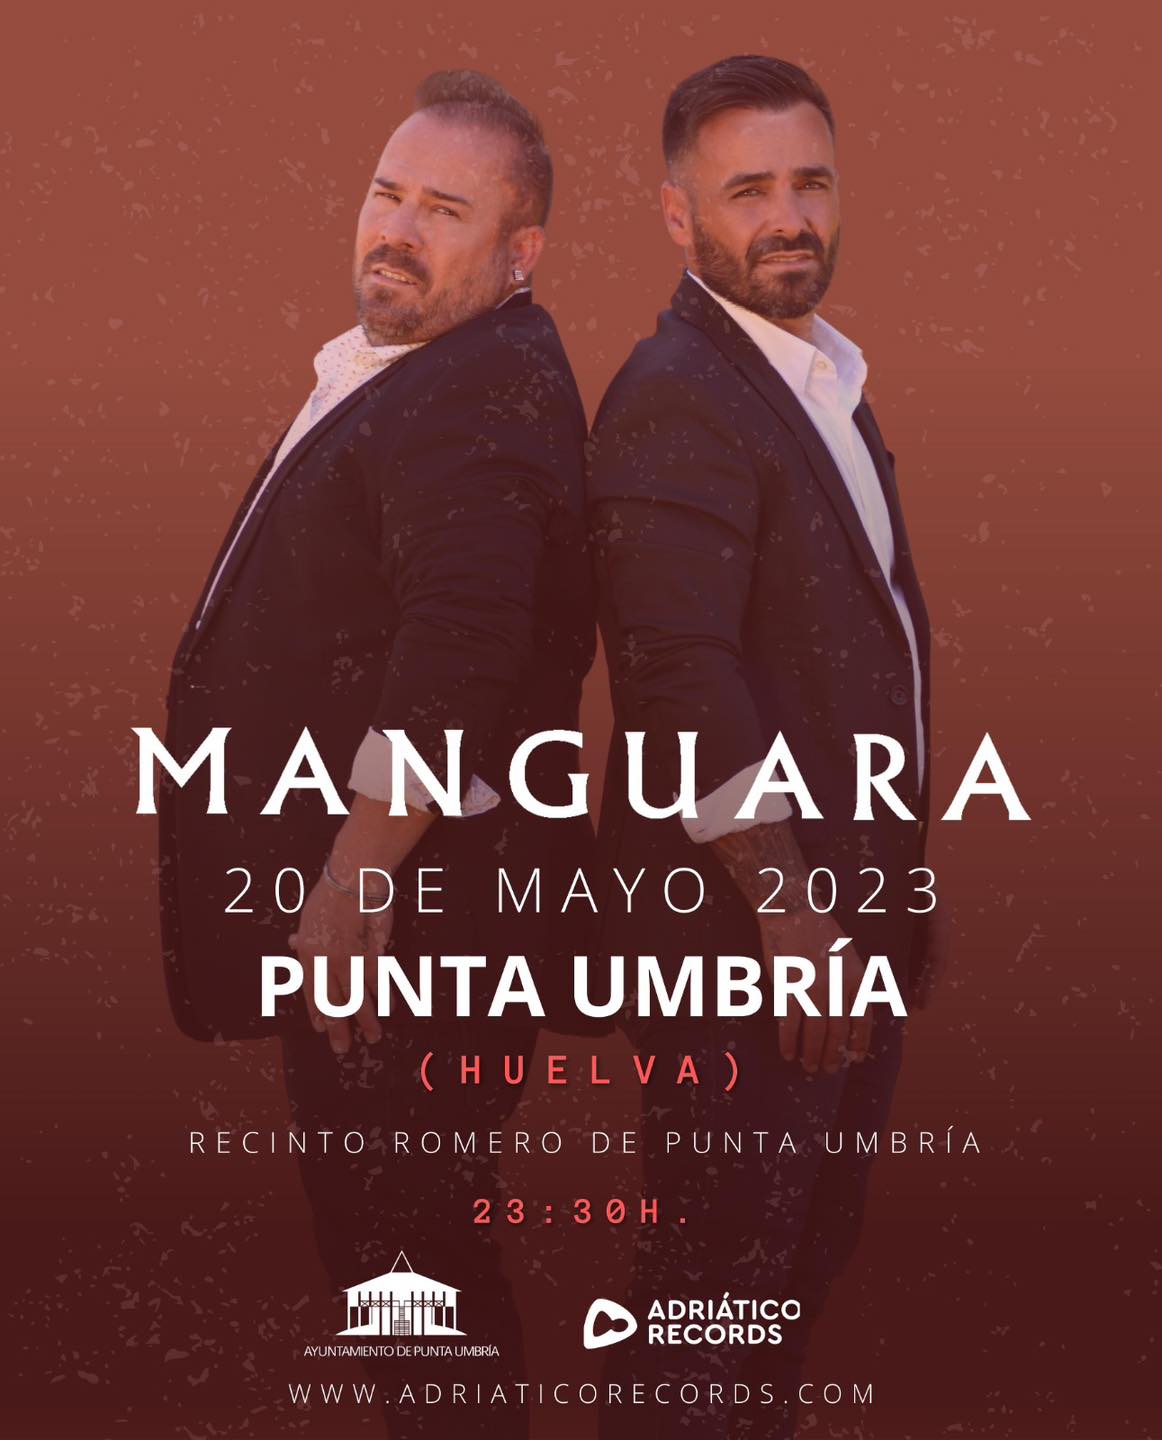 La Romería de la Santa Cruz de Punta Umbría contará este sábado con la actuación de Manguara